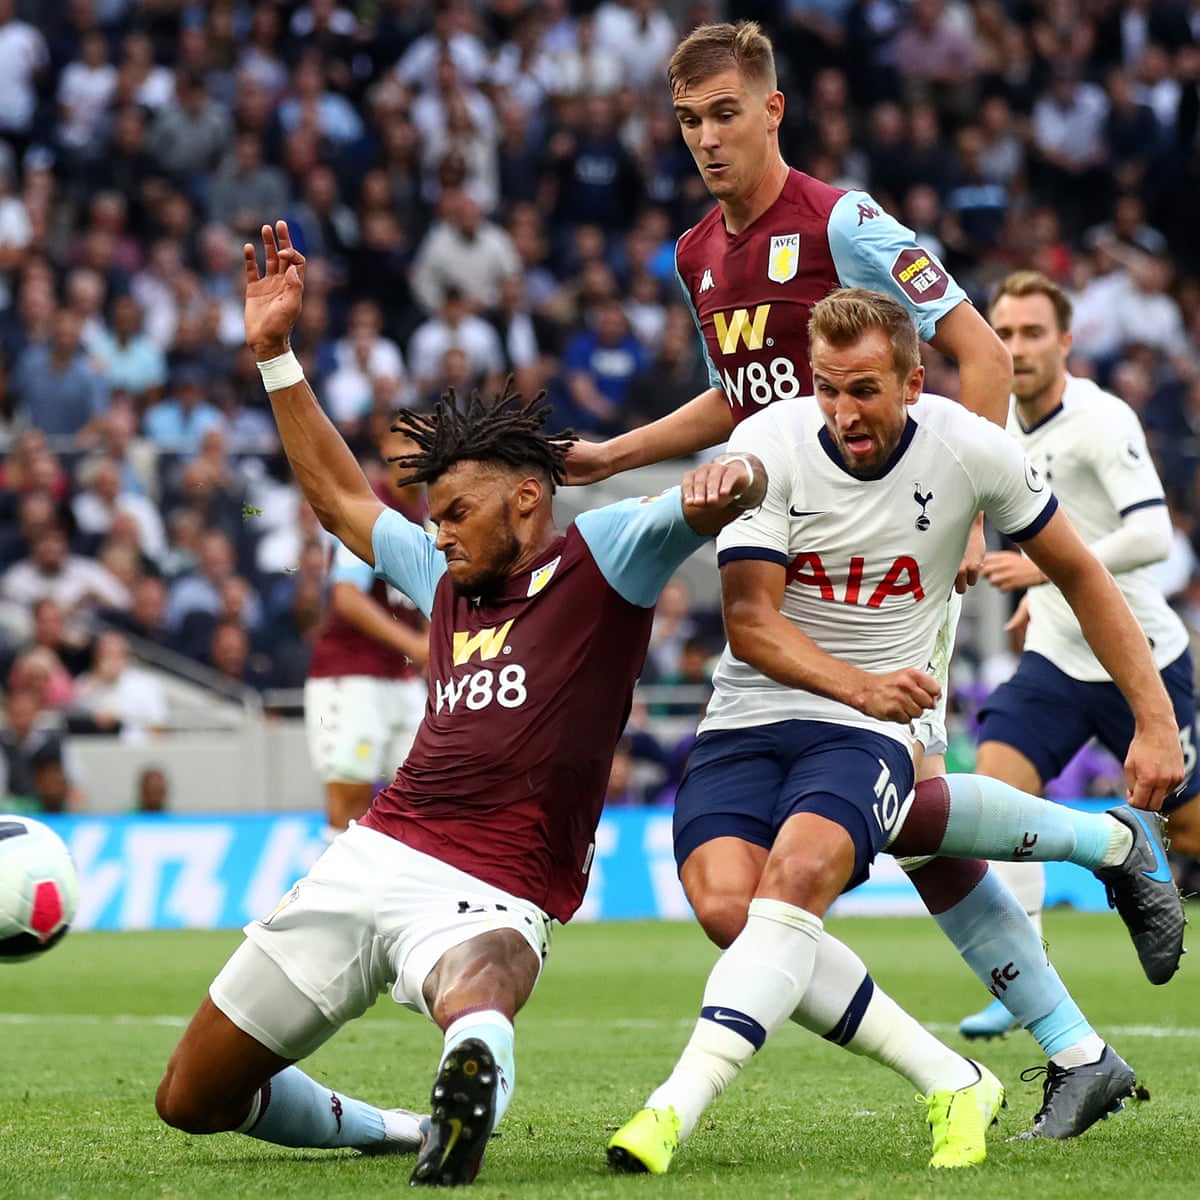 Tottenham Hotspur 3-1 Aston Villa: Premier League – as it happened, Premier League